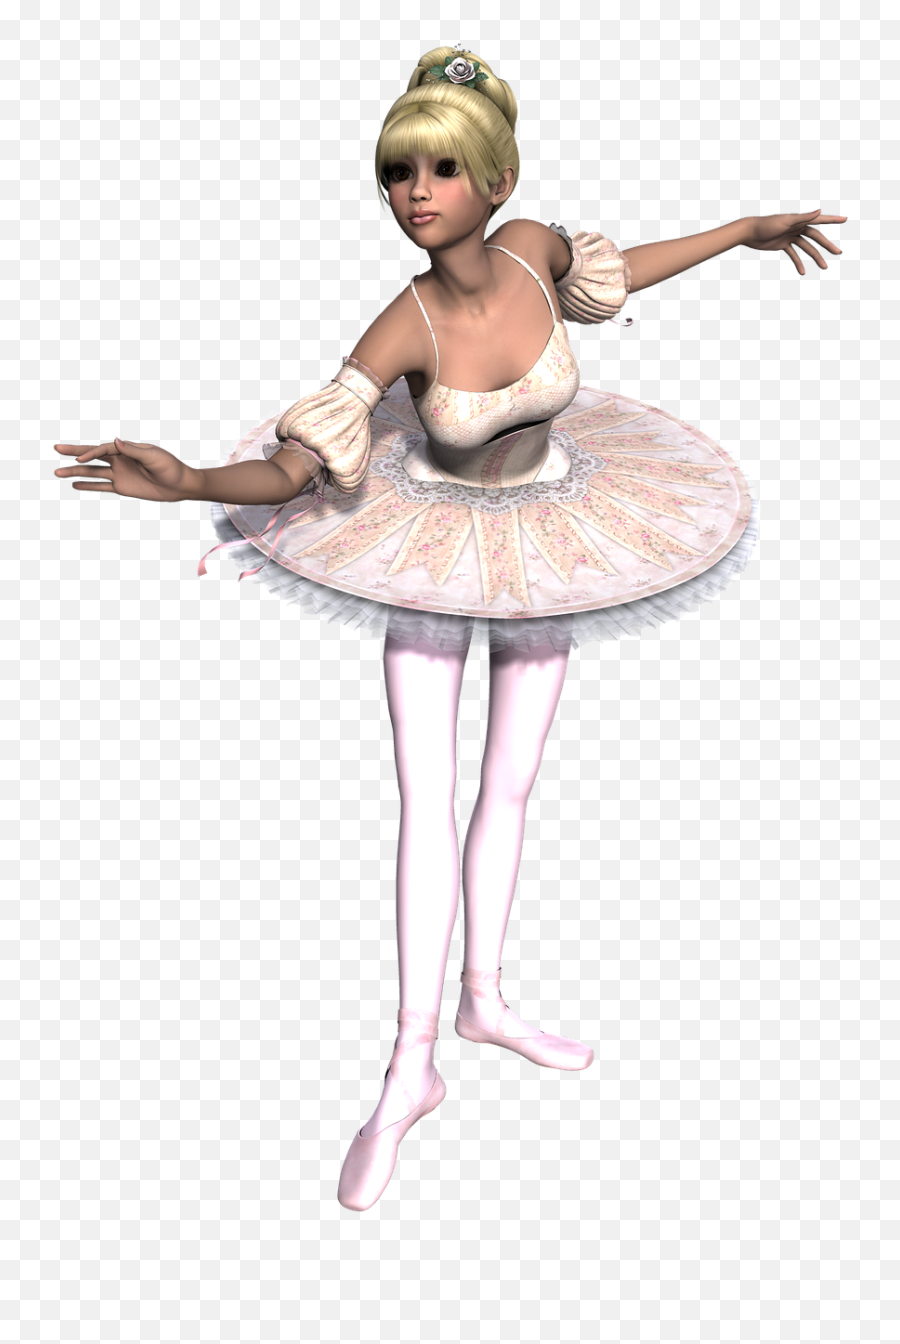 Girl Dance Classic Tutu 3d - Ballerina Danza Classica In 3d Emoji,Dancing Girl Emoji Costume